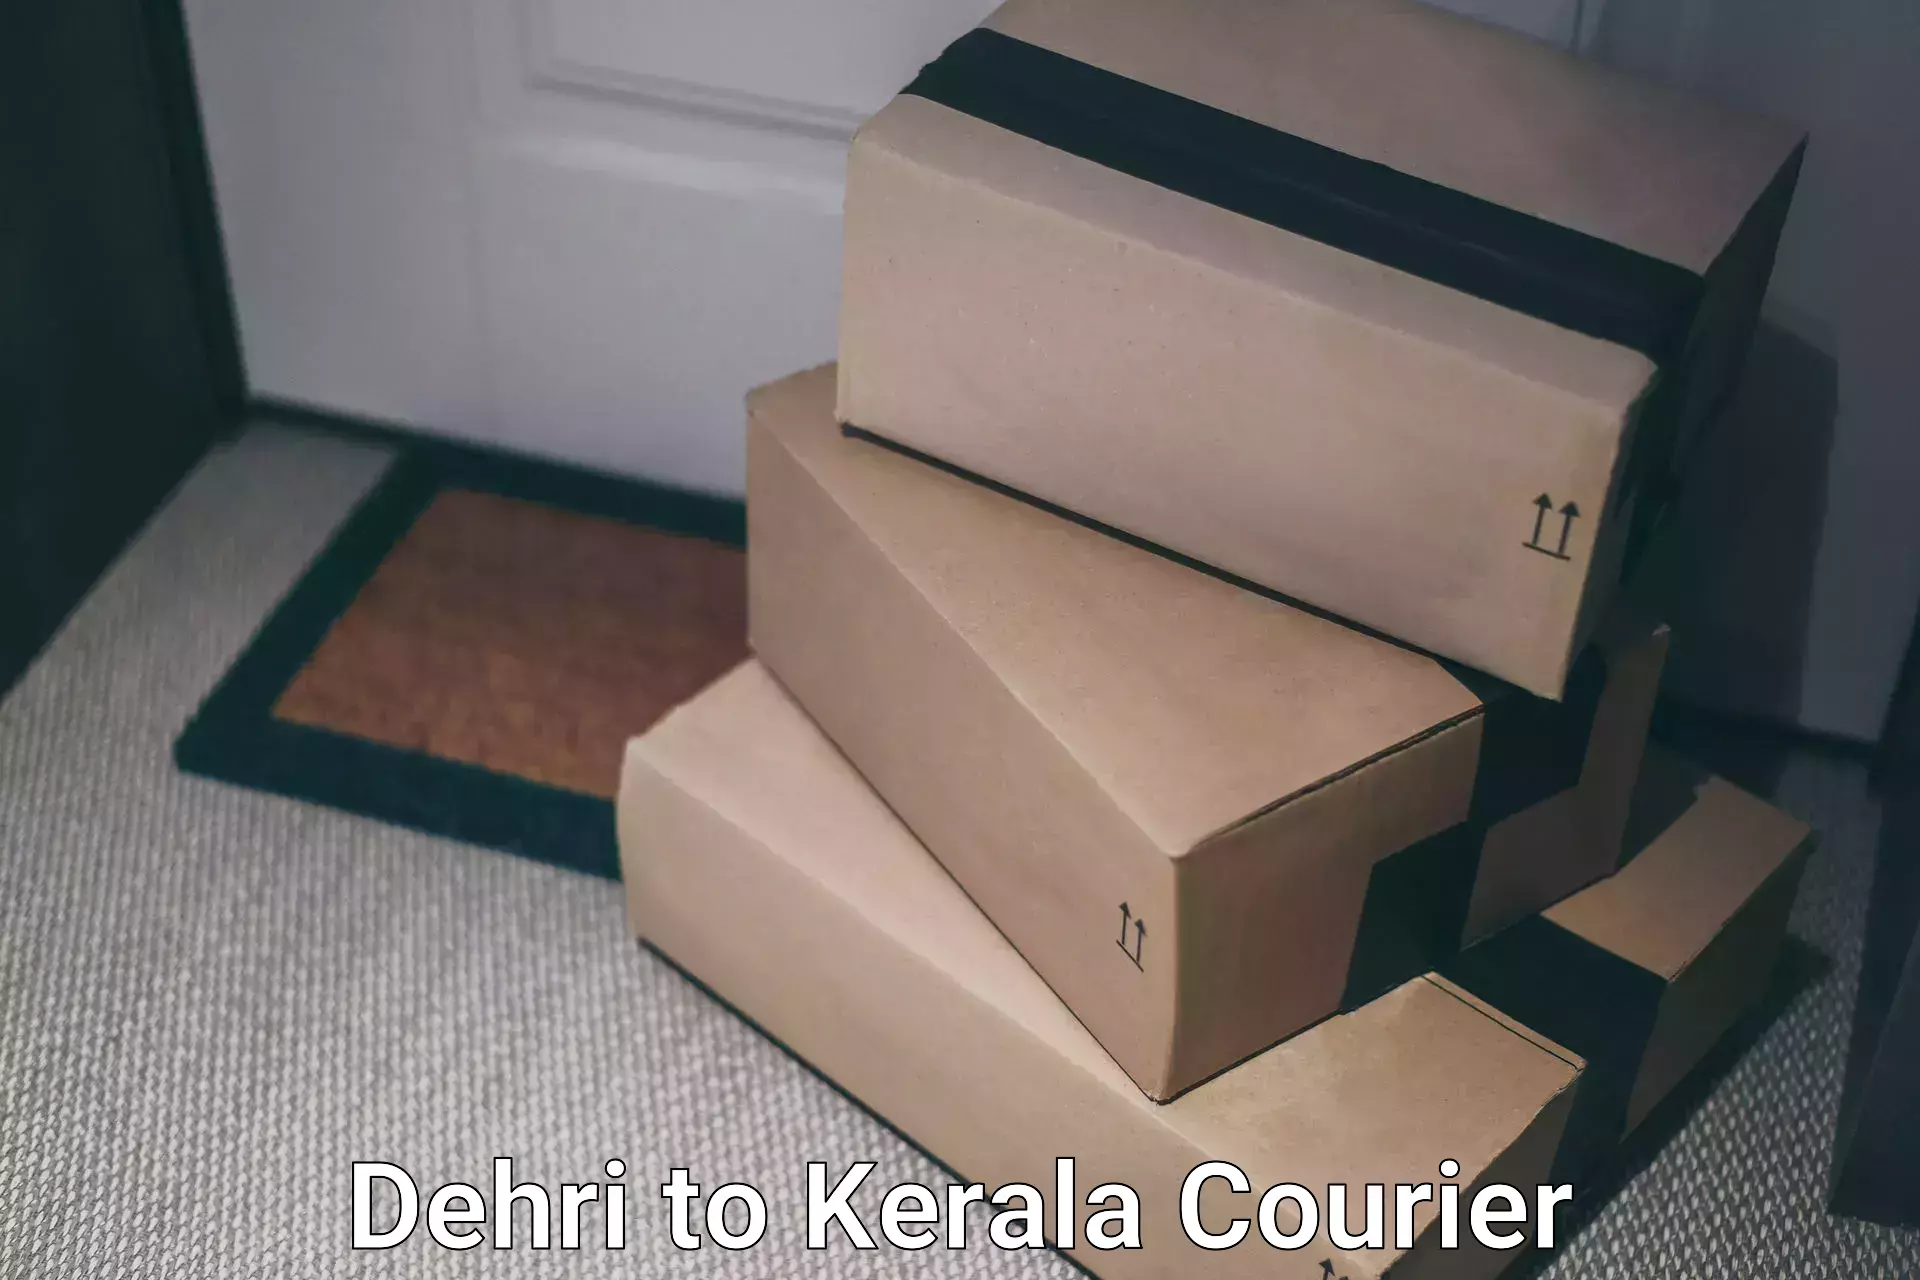 Cargo delivery service Dehri to Kerala